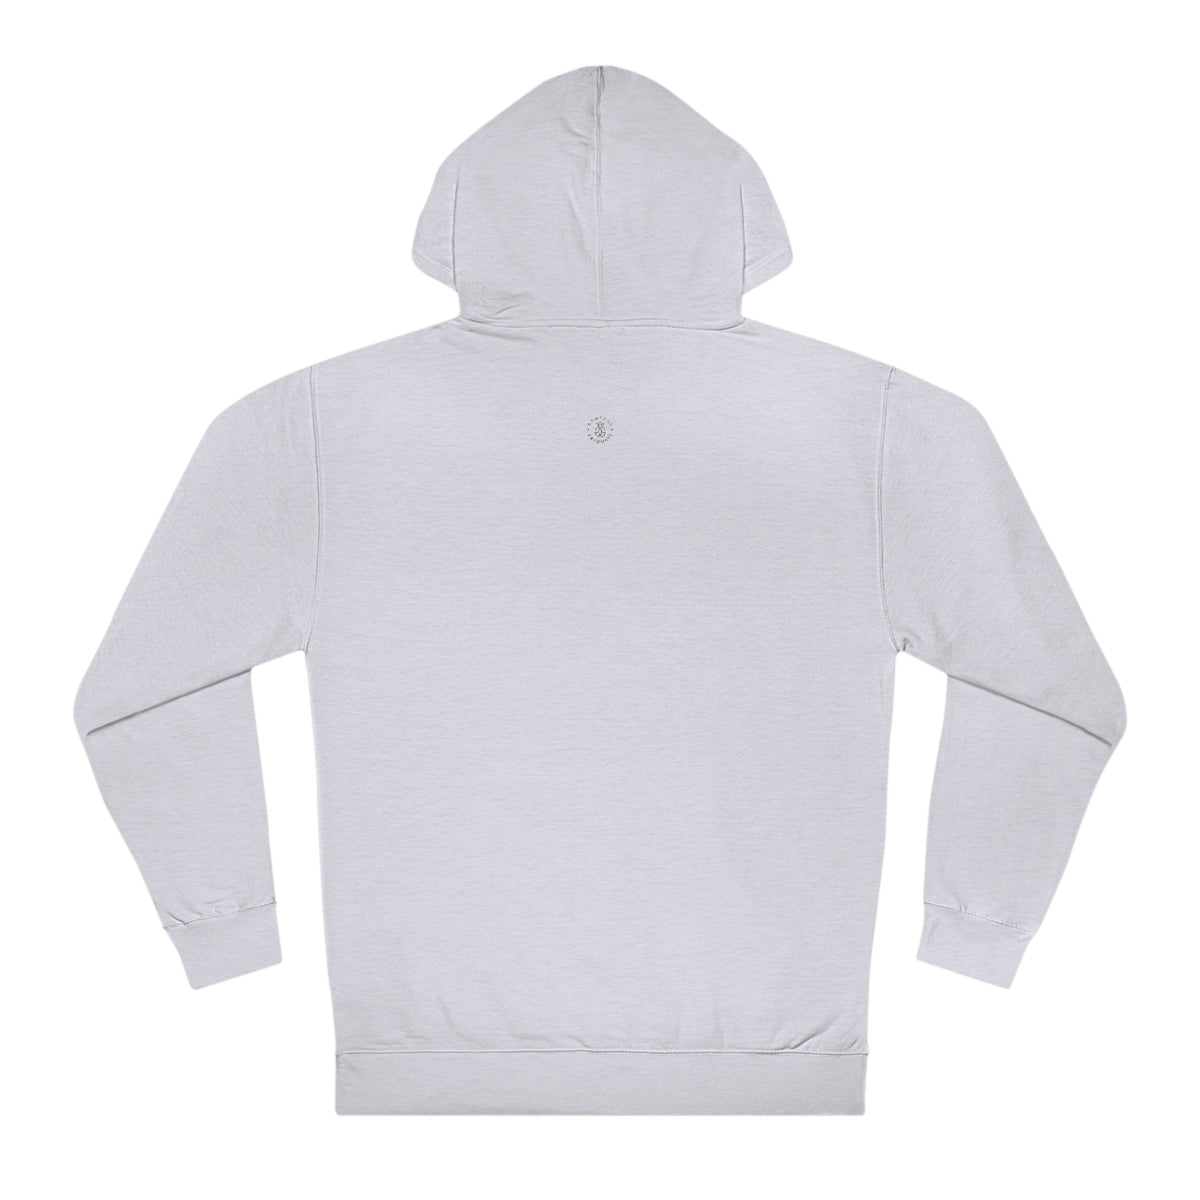 Baylor Hooded Sweatshirt - GG - ITC